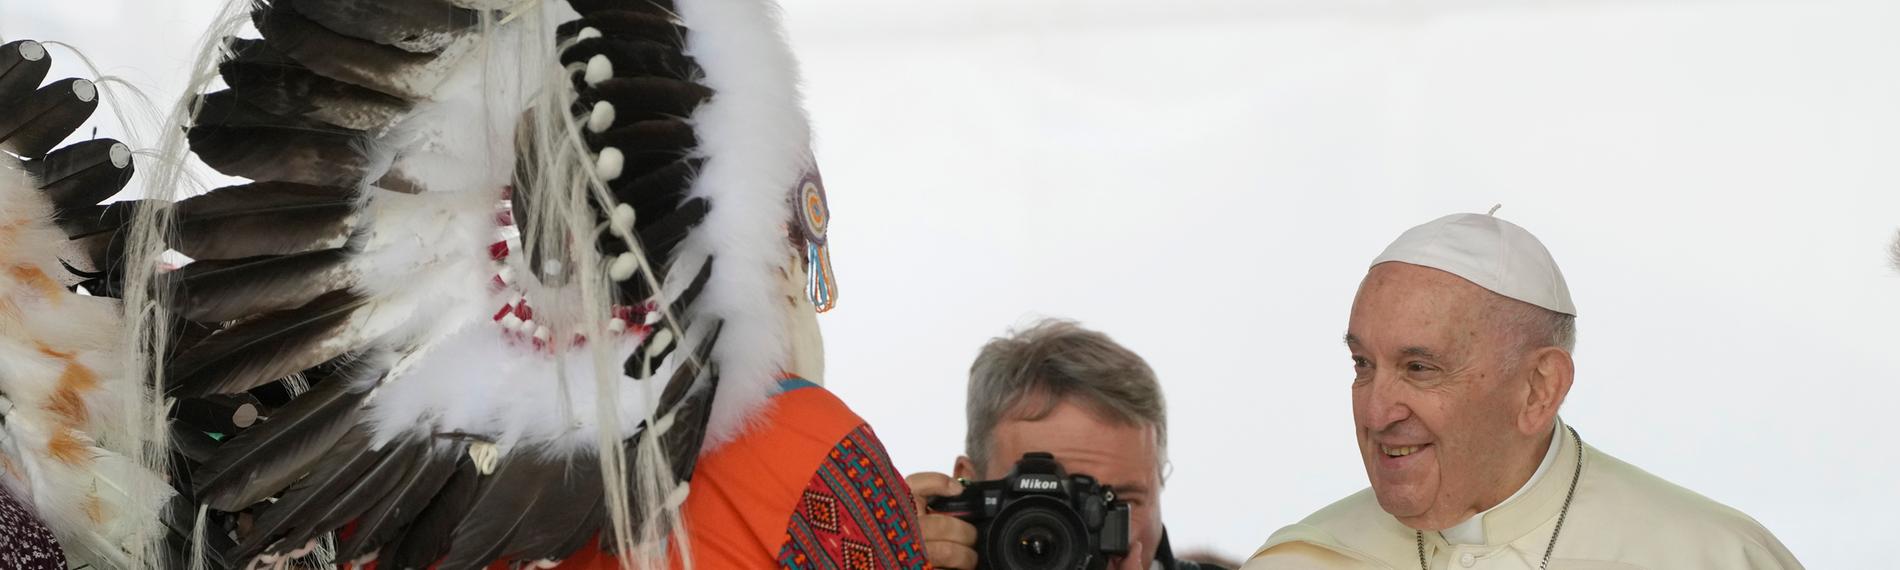 Papst Franziskus schüttelt einem Mitglied der Indigenen Gemeinschaft in Kanada die Hand